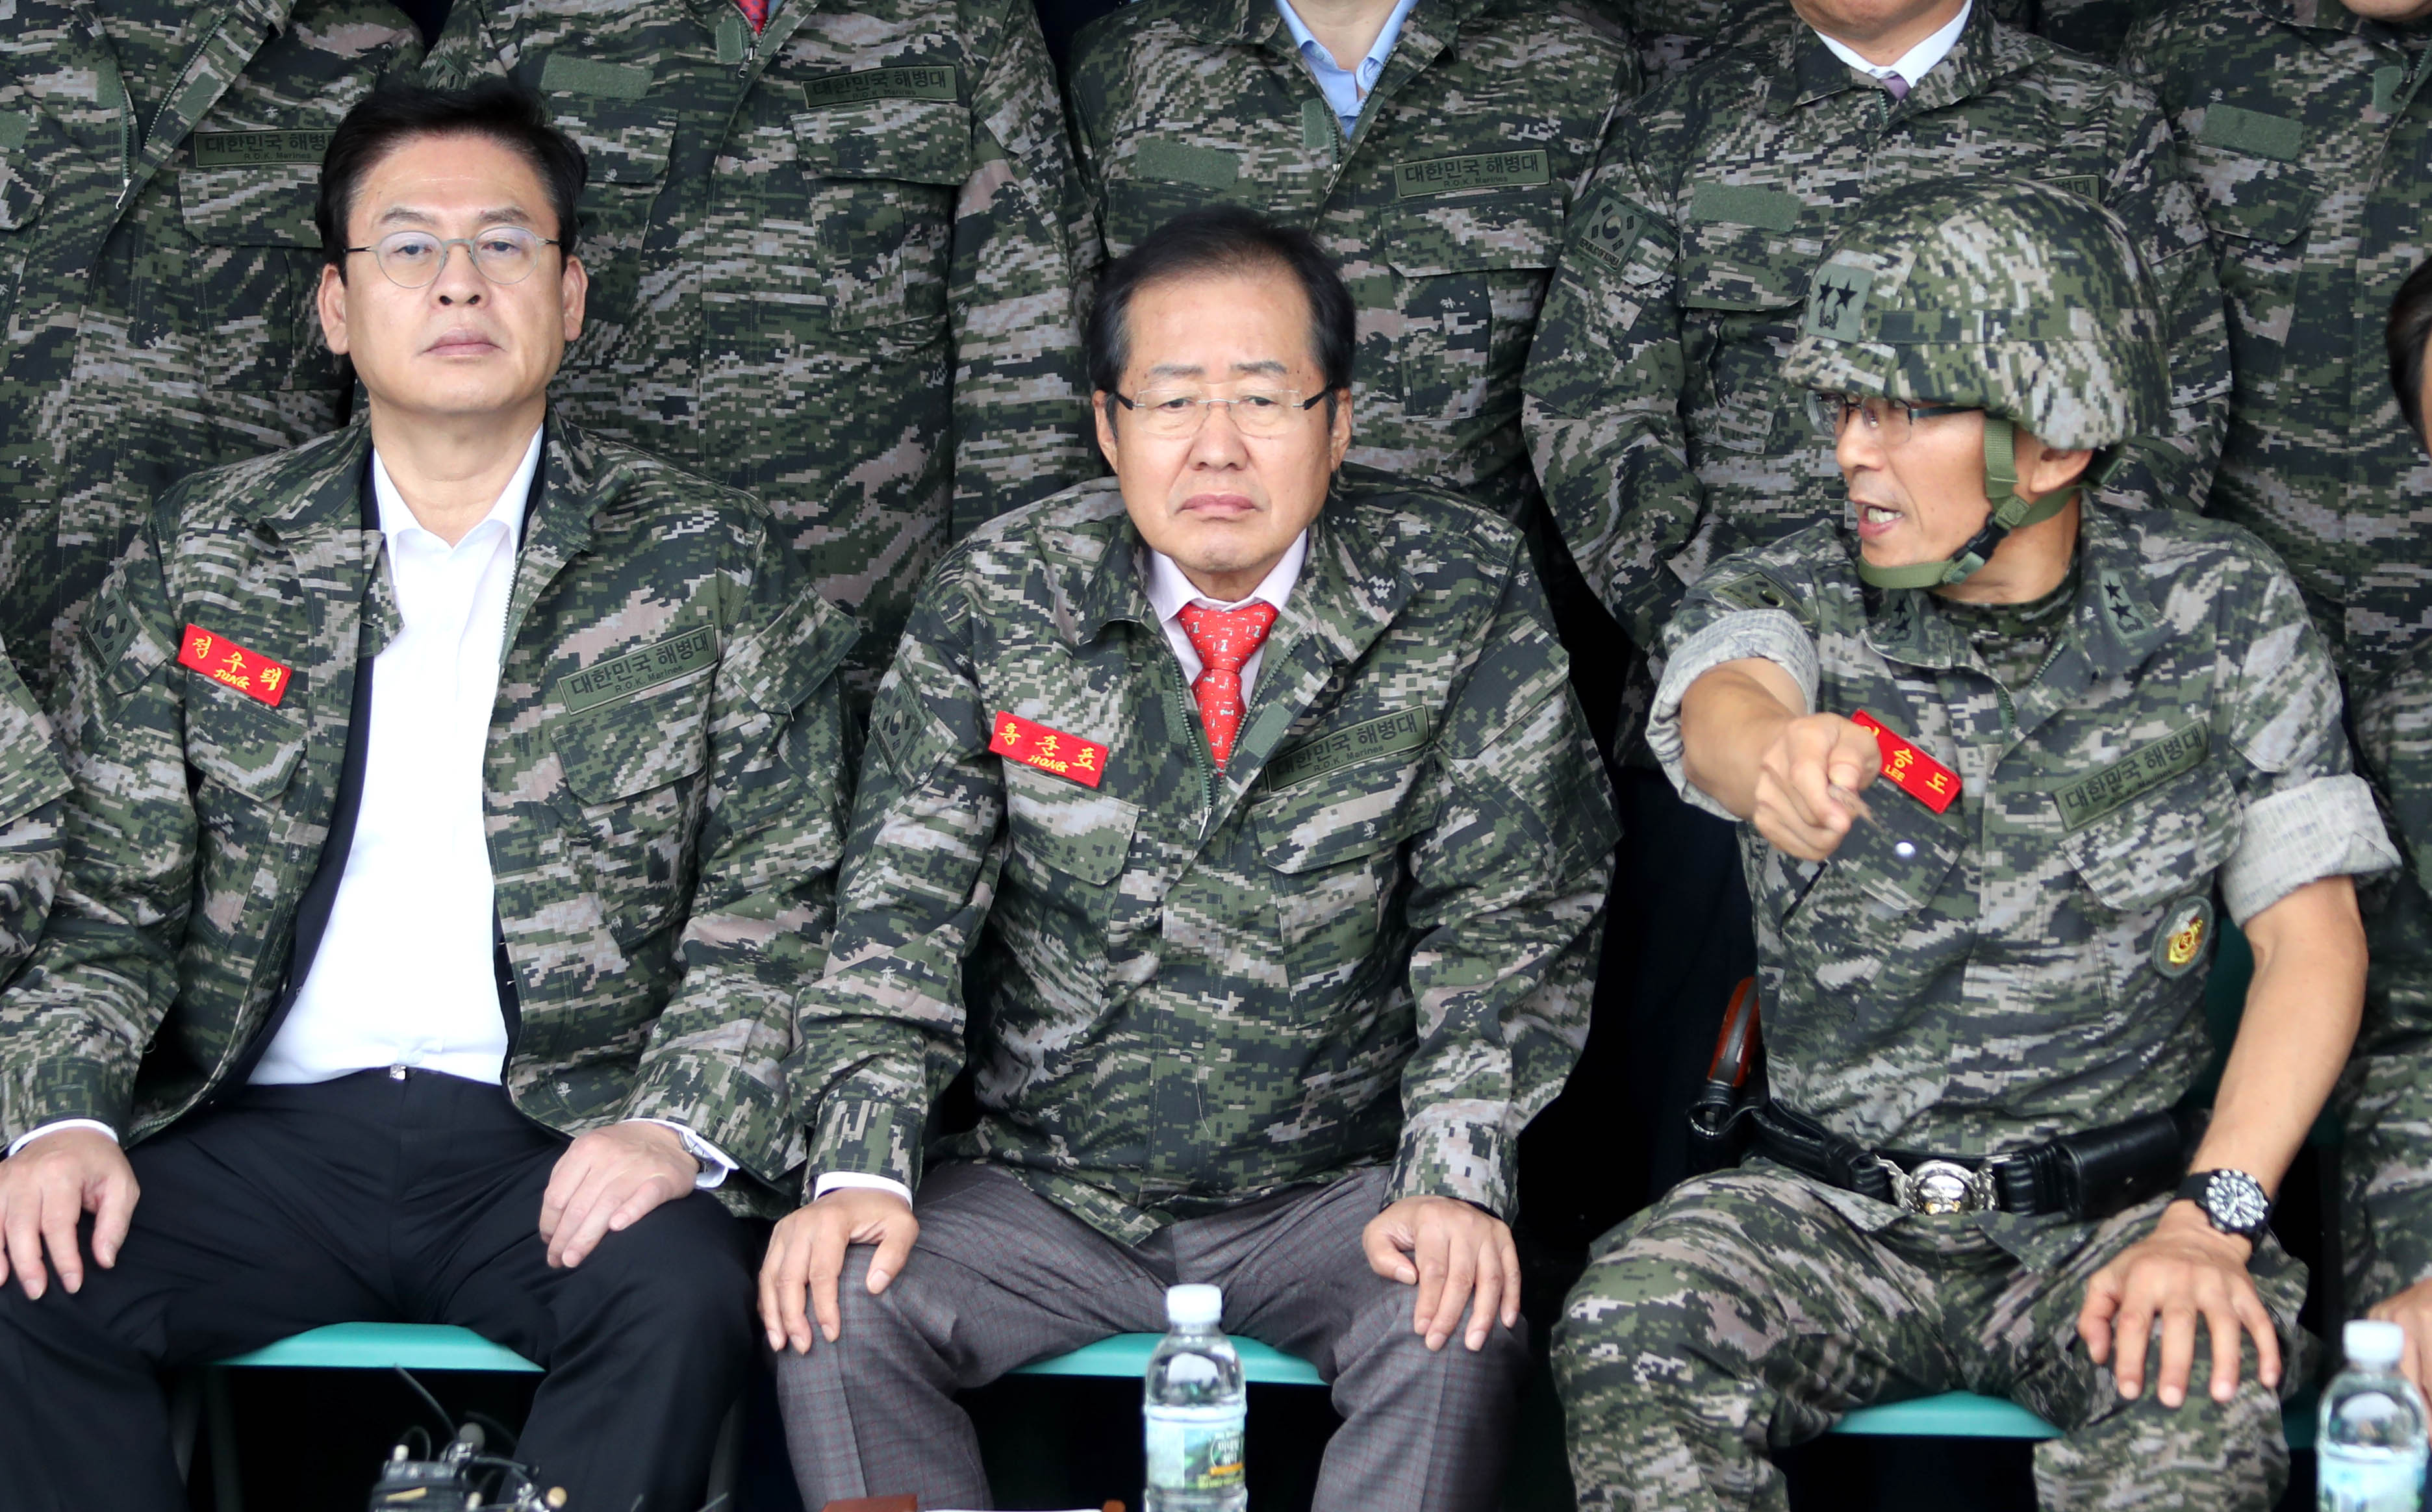 2017년 9월 6일, 자유한국당 홍준표 대표(가운데)와 정우택 원내대표가 김포 해병대 2사단을 방문, 부대장으로부터 설명을 듣고 있다. 당시 한국당은 국회 보이콧에 들어간 상태였다.